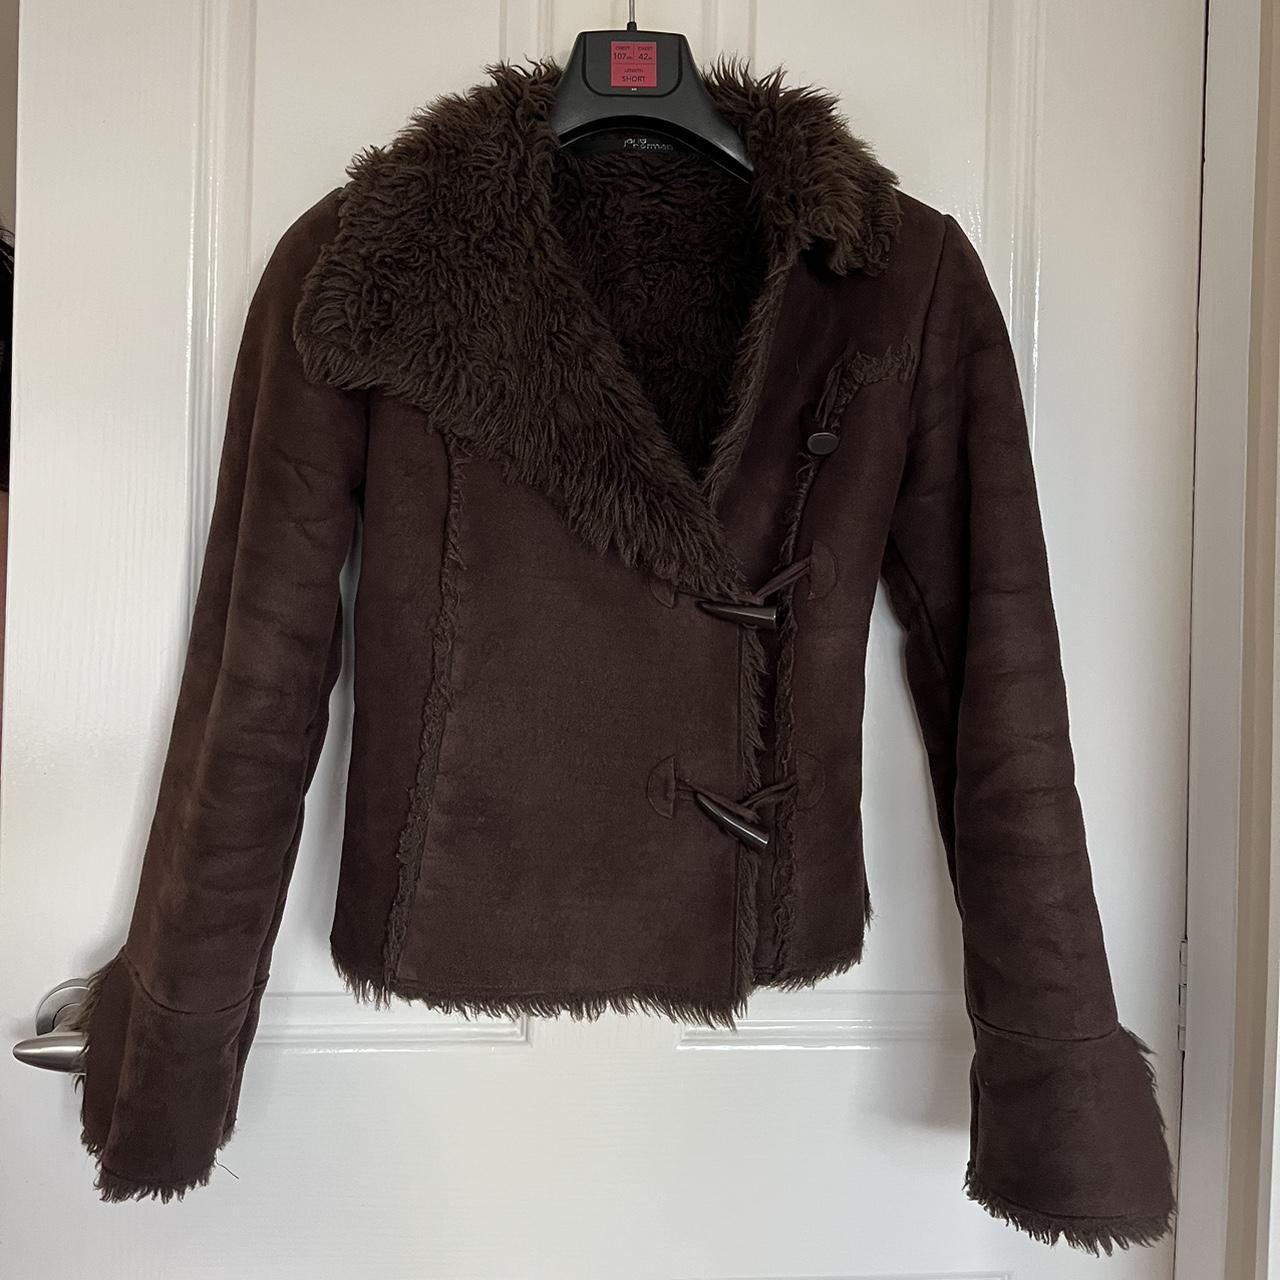 Vintage Afghan y2k brown coat buckle detail faux fur... - Depop